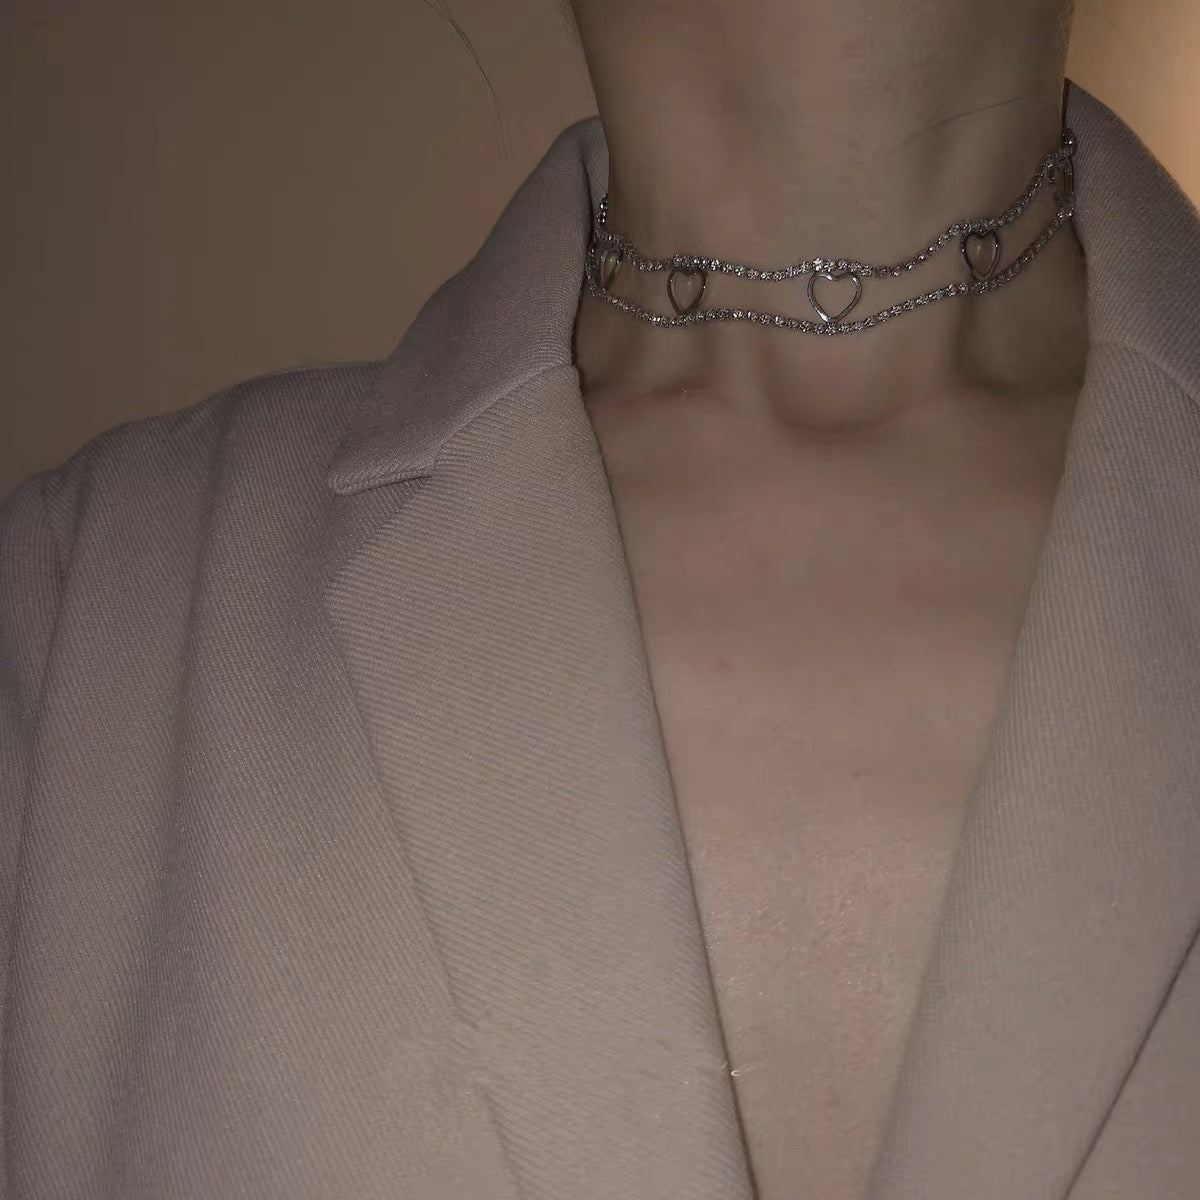 Heart Choker Necklace